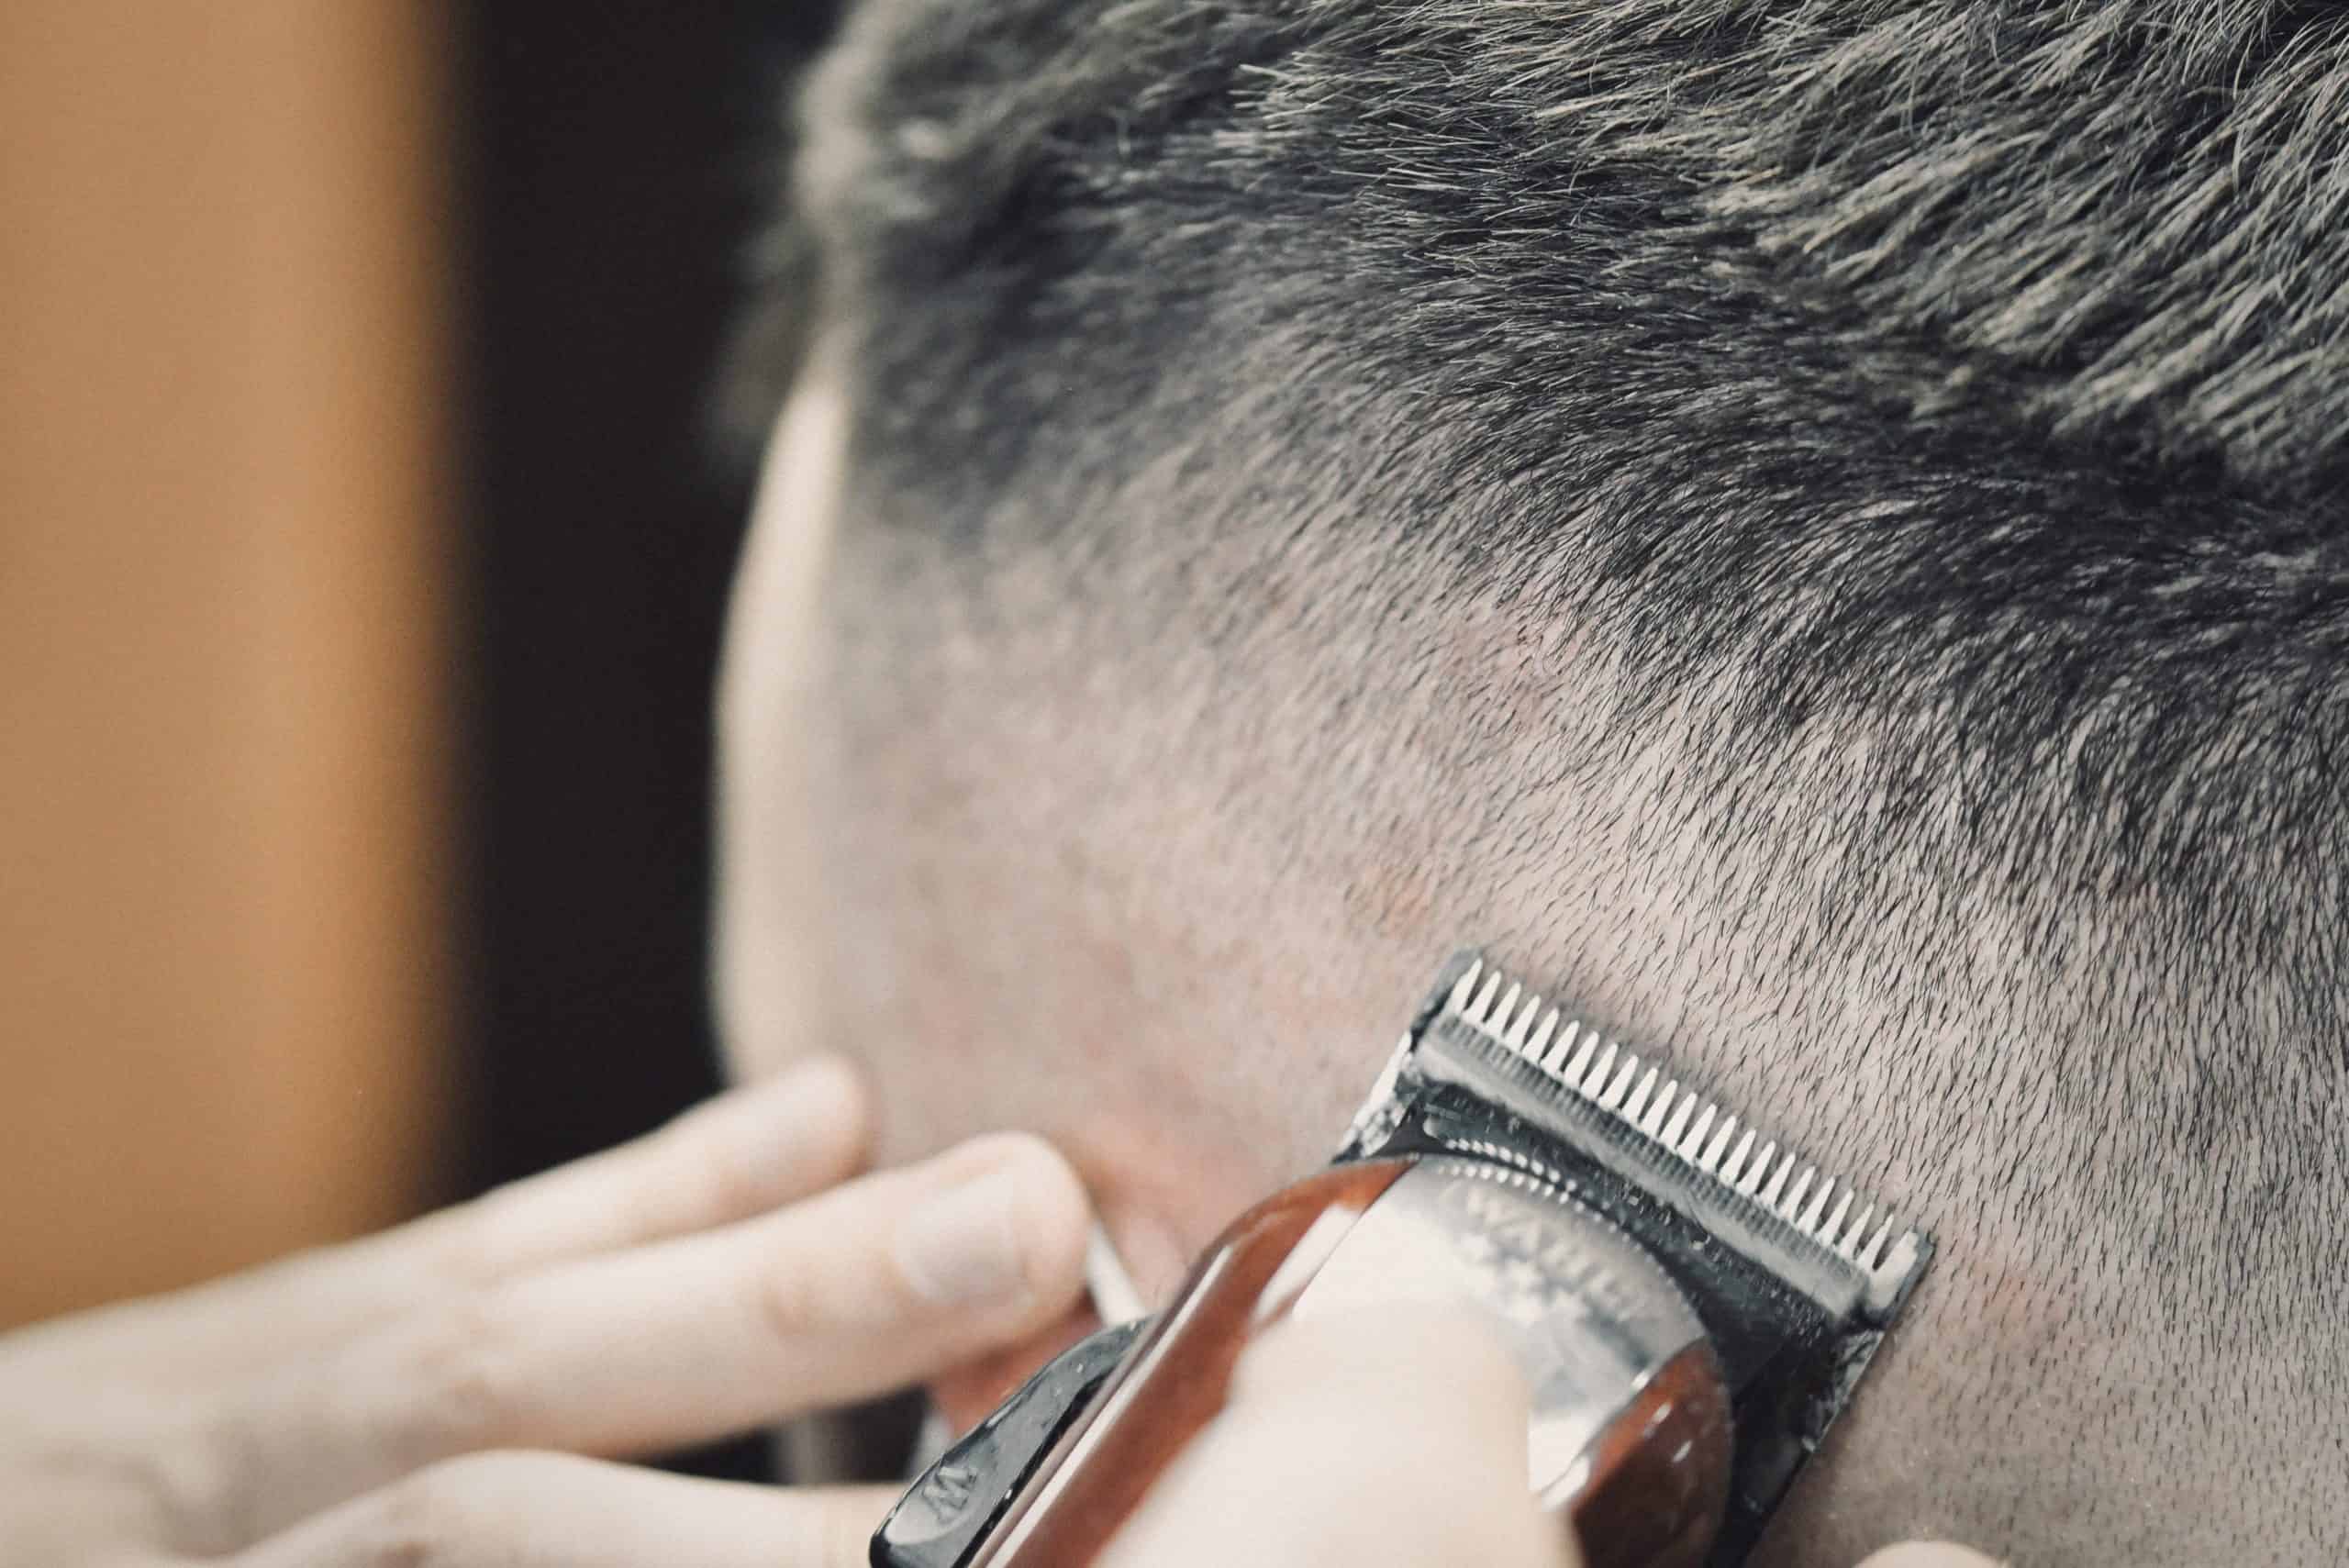 Friseur Schneider Messerschnitt Haare Herrenfriseur